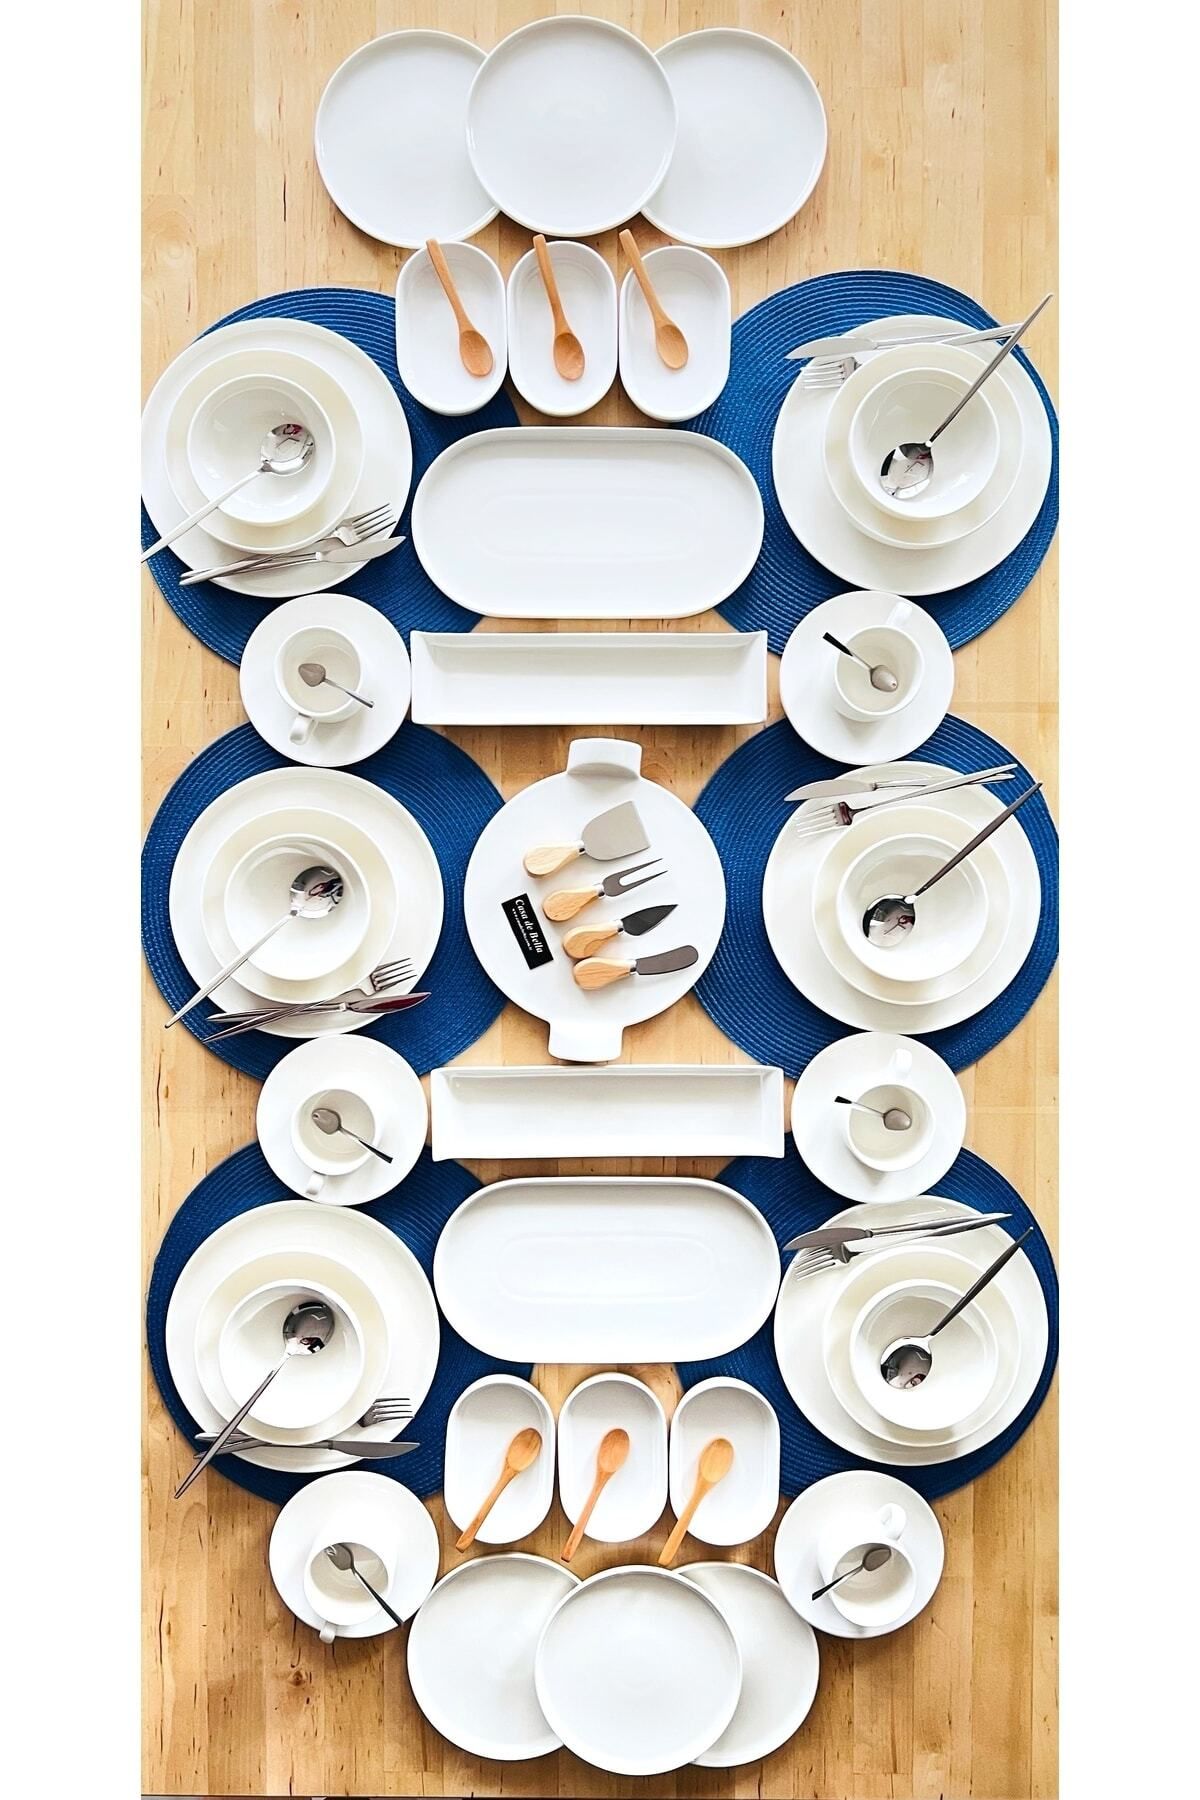 CASA DE BELLA White Modern 186 Parça 12 Kişilik Porselen Yemek Takımı Kahvaltı Takımı Ve Çatal Kaşık Bıçak Seti